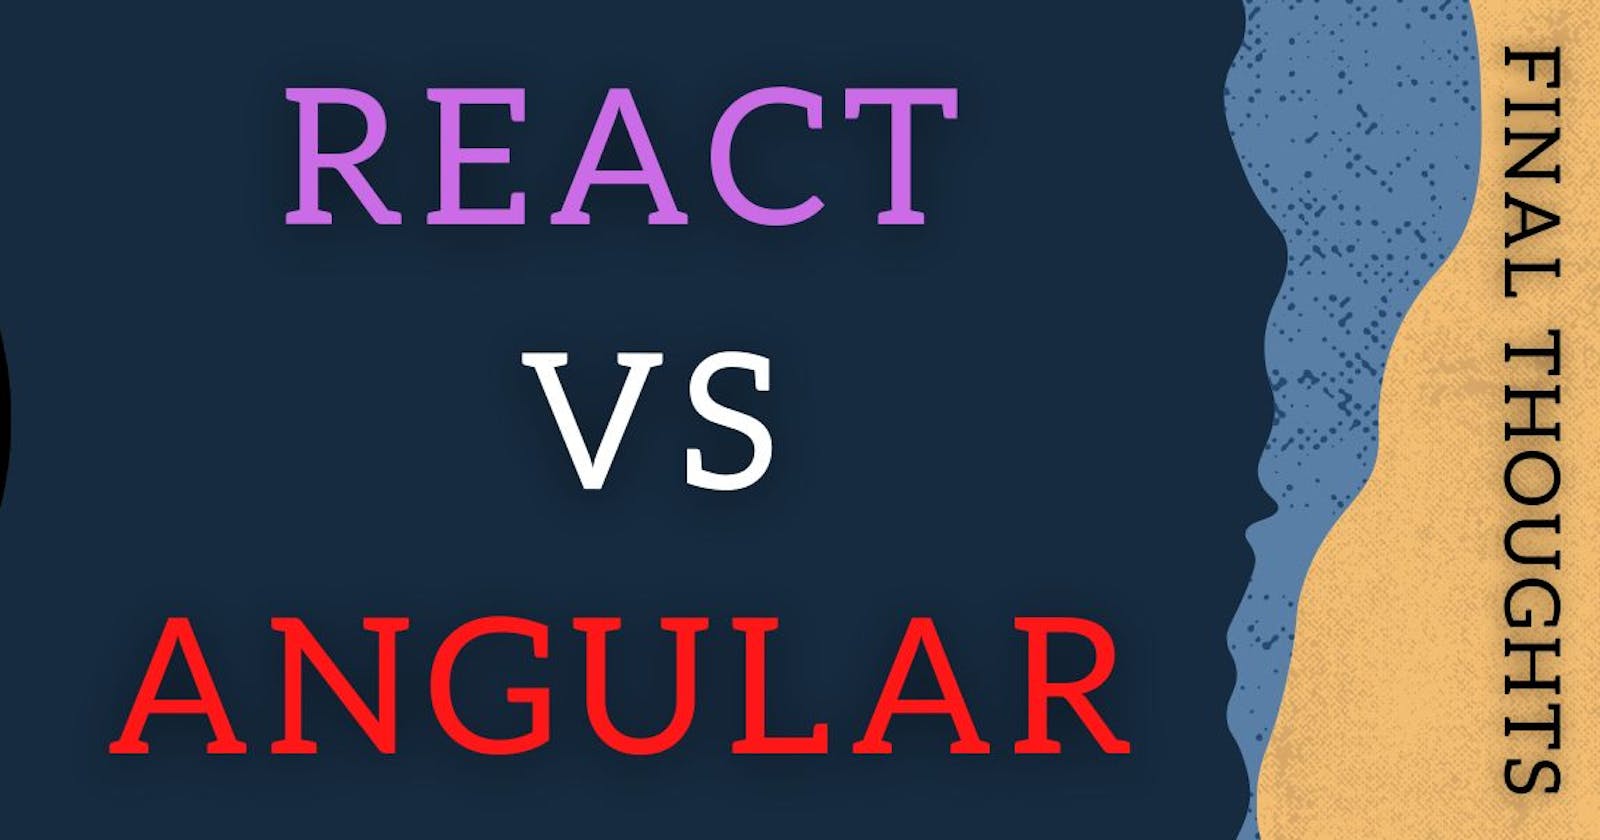 React vs Angular: Final Thoughts